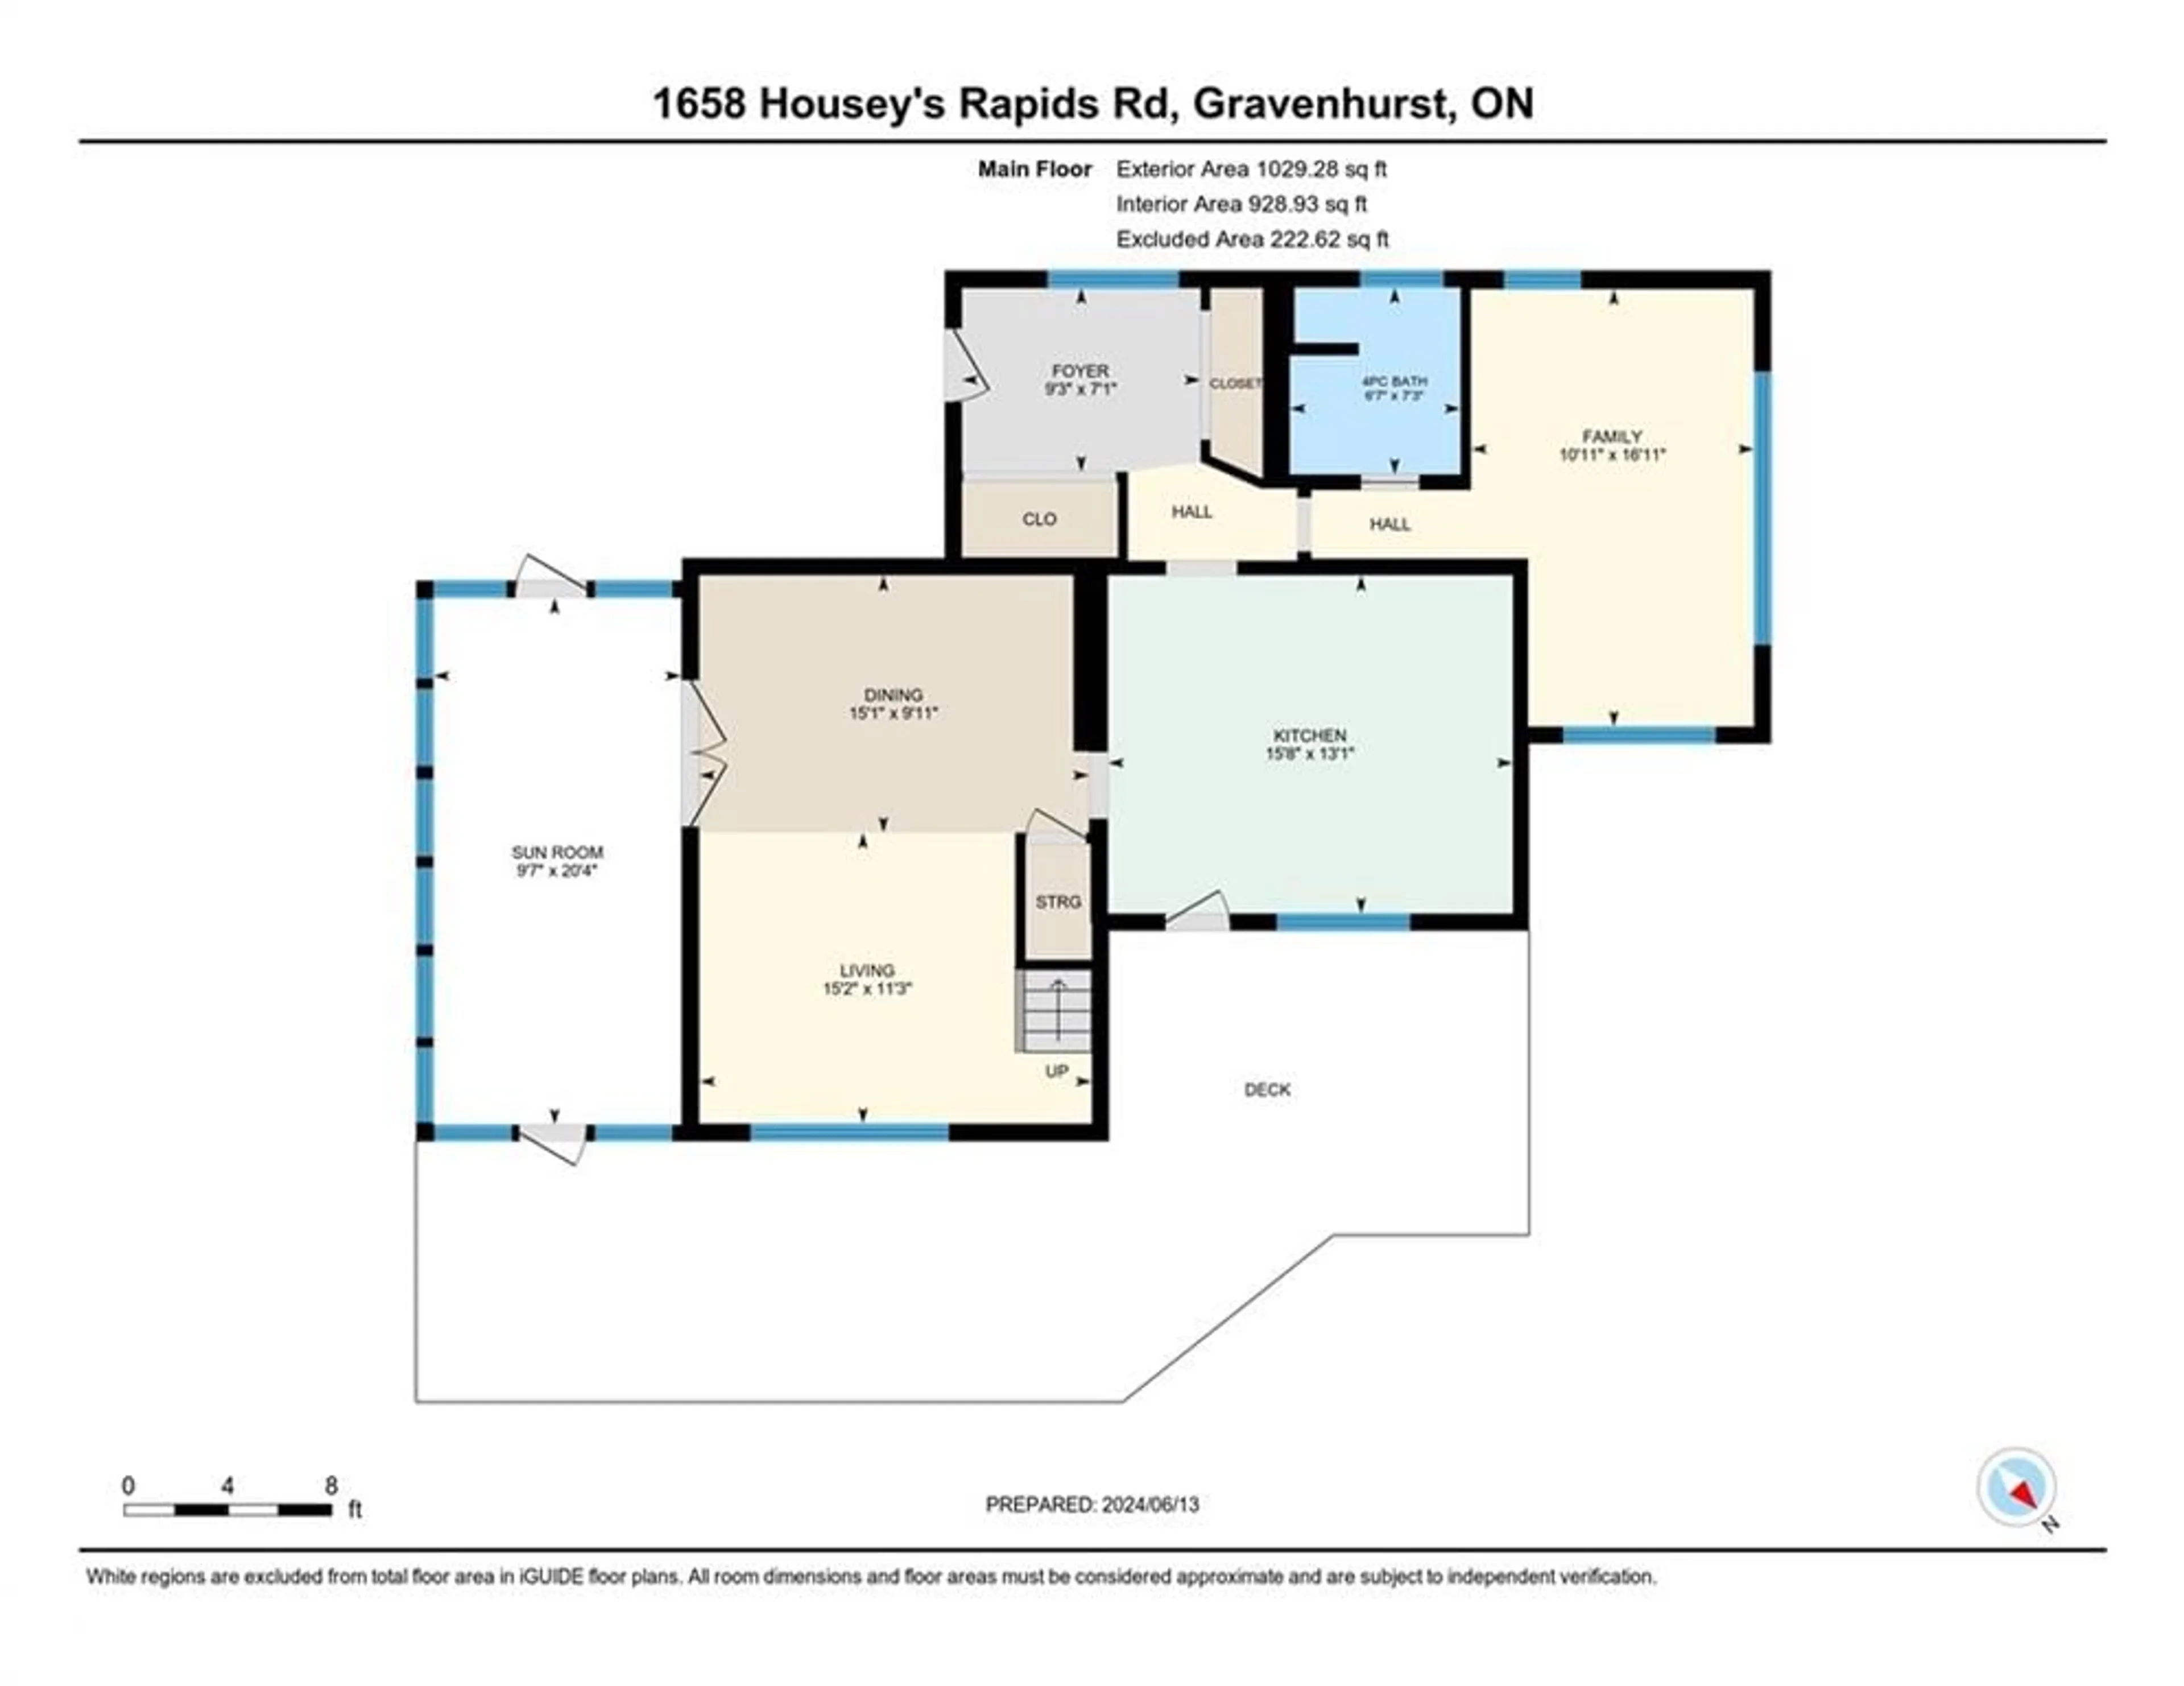 Floor plan for 1658 Housey's Rapids Rd, Gravenhurst Ontario P1P 1R3